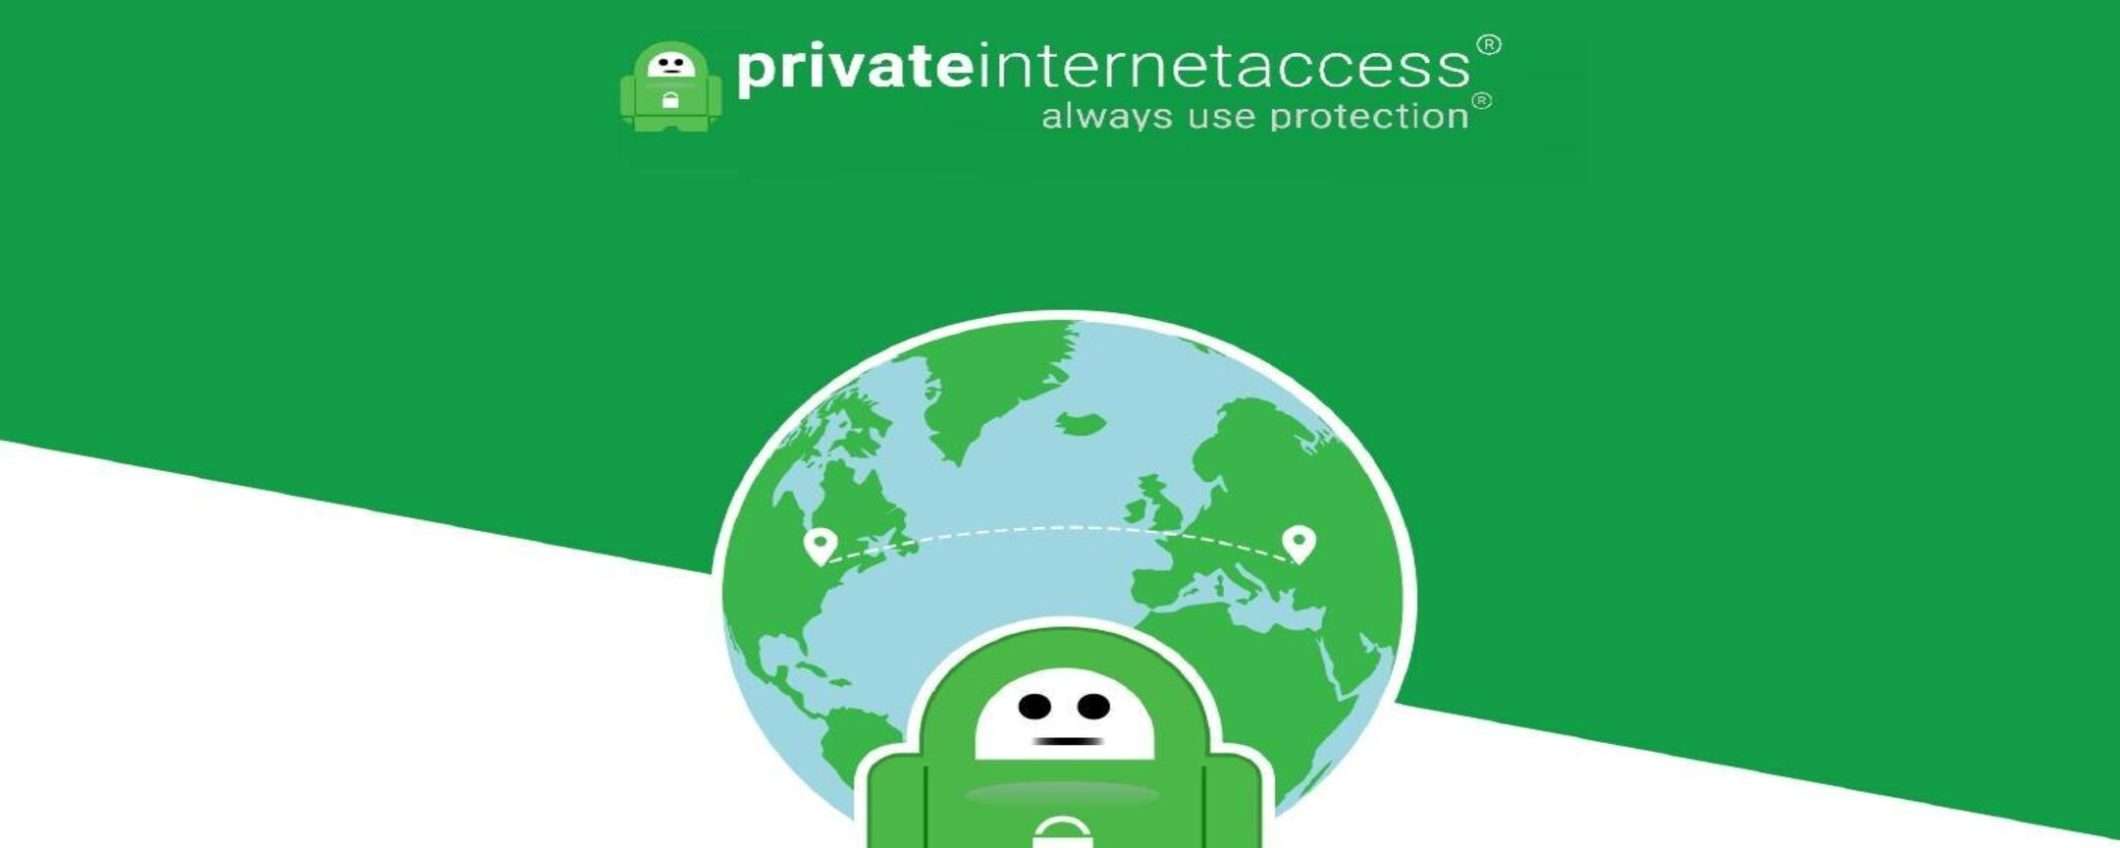 L'offerta VPN di PIA: massima privacy a meno di 2 euro al mese